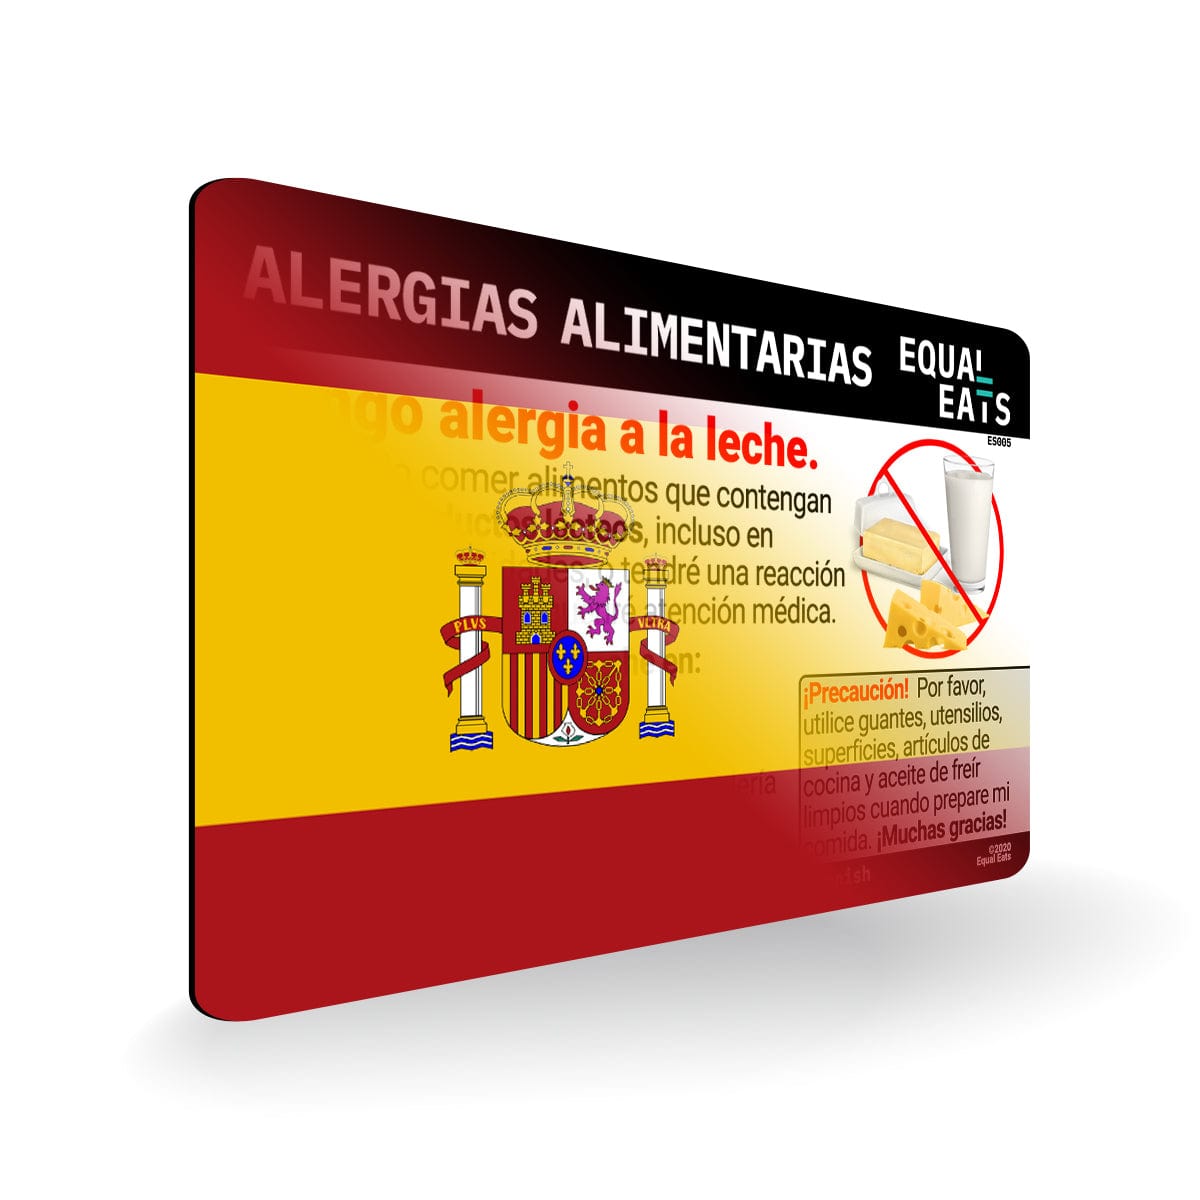 Milk Allergy in Spanish. Milk Allergy Card for Spain